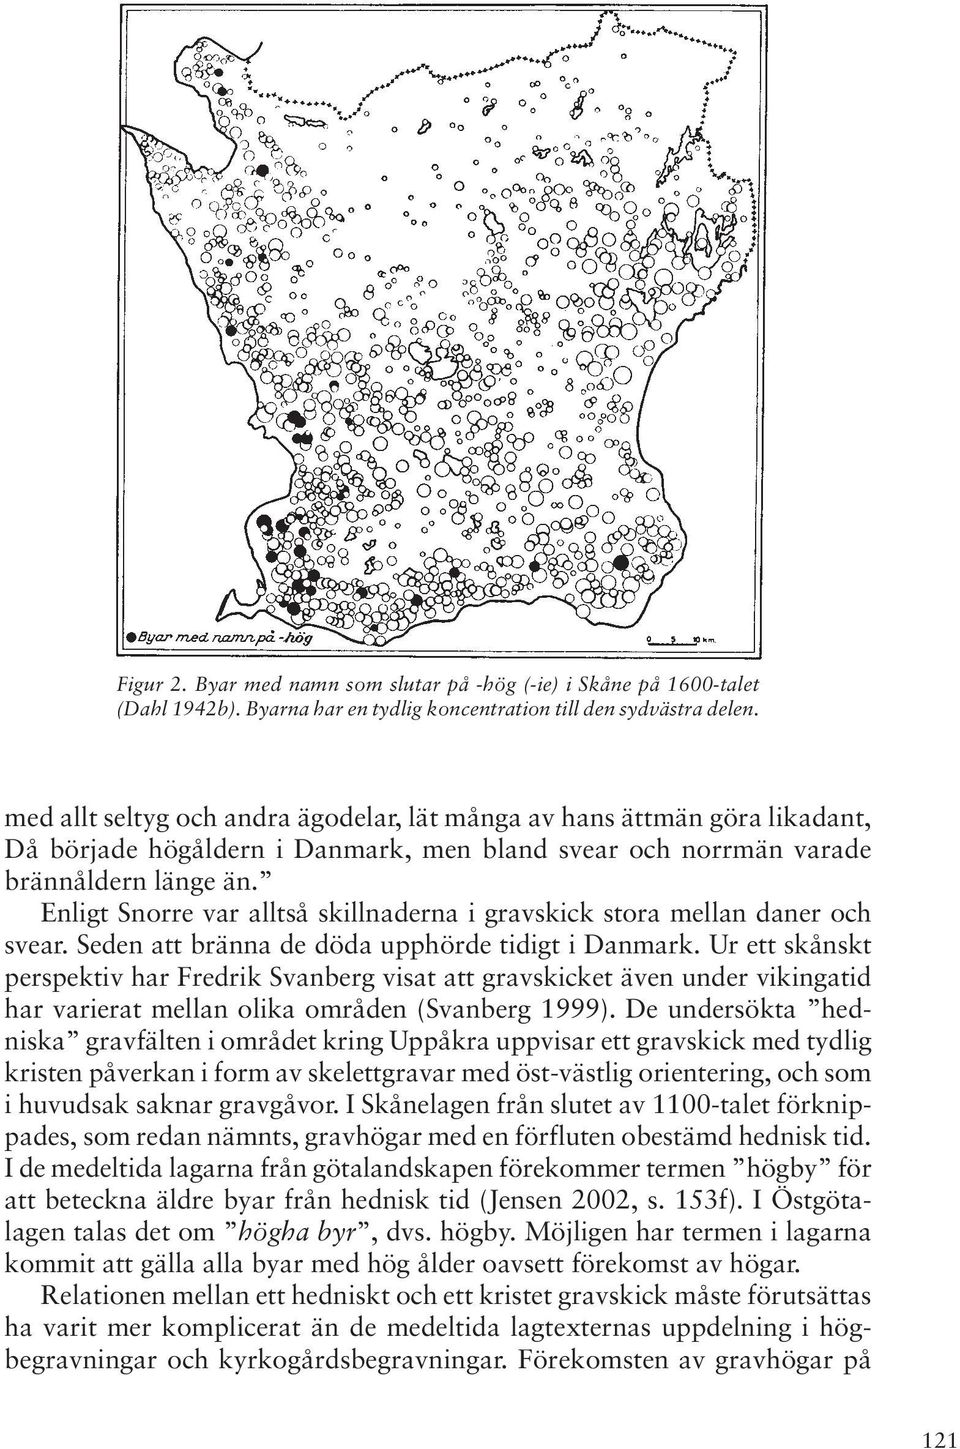 Enligt Snorre var alltså skillnaderna i gravskick stora mellan daner och svear. Seden att bränna de döda upphörde tidigt i Danmark.